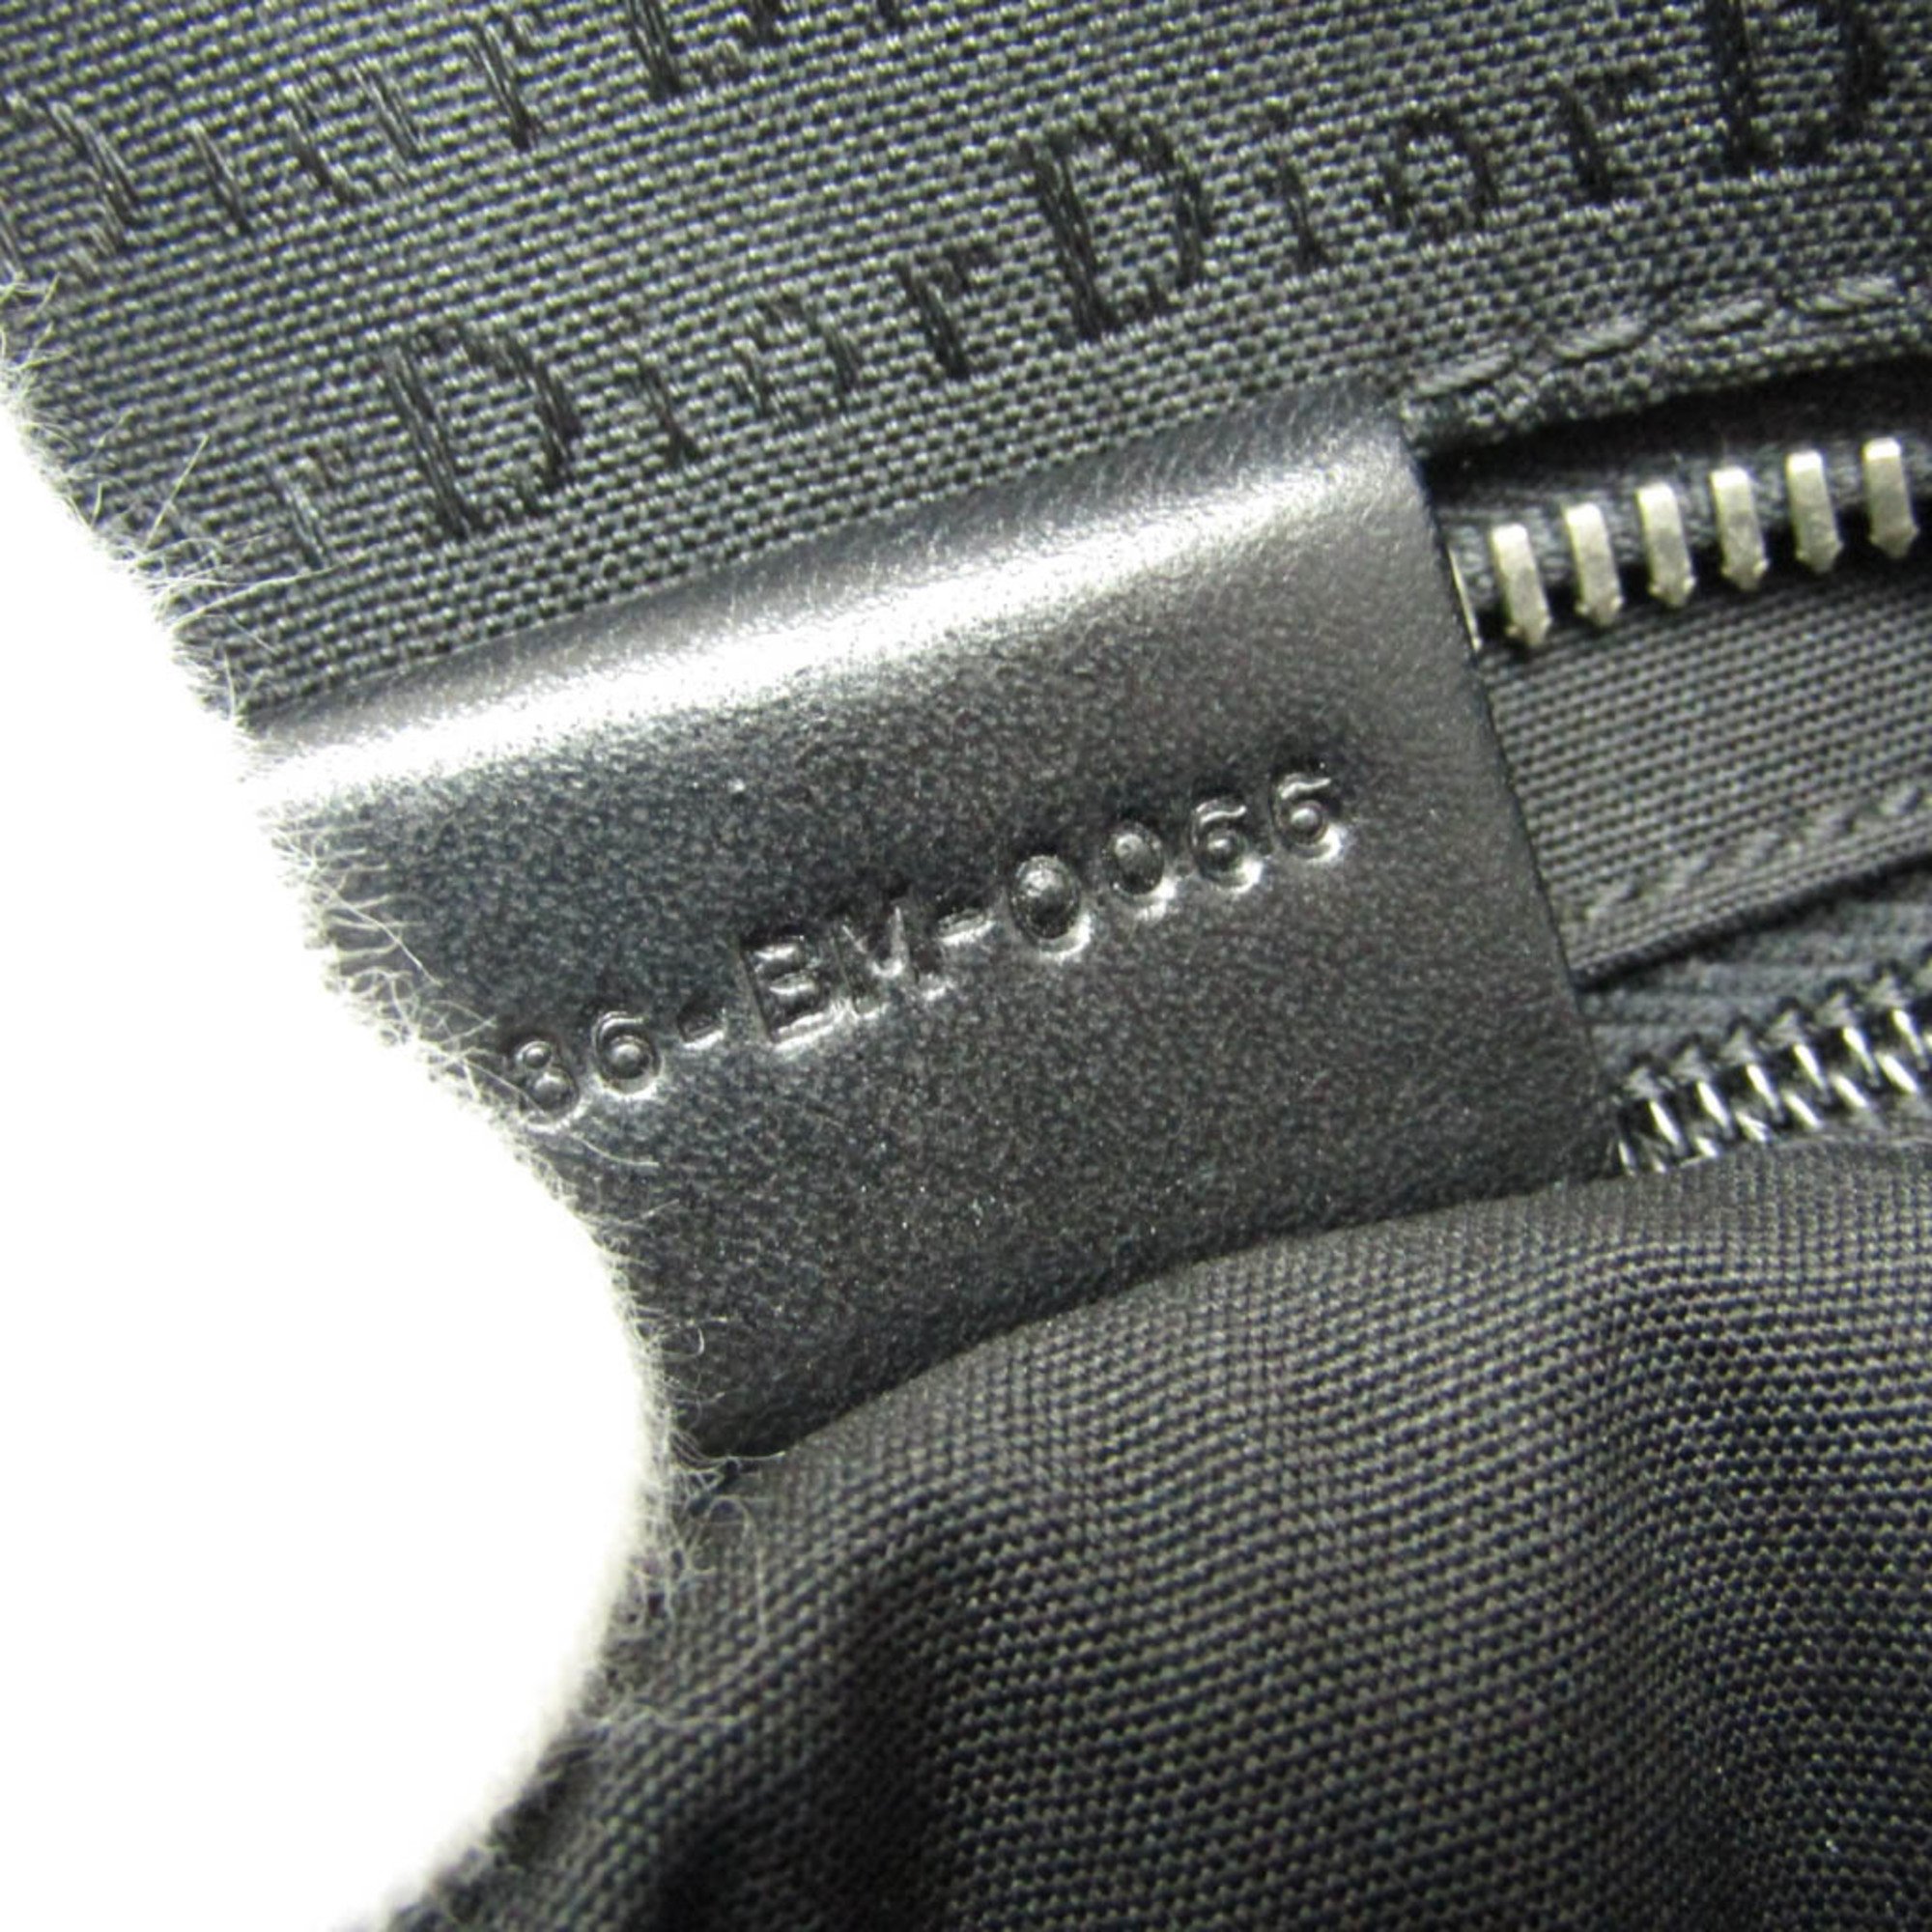 Dior Homme Men's Canvas,Leather Shoulder Bag Black